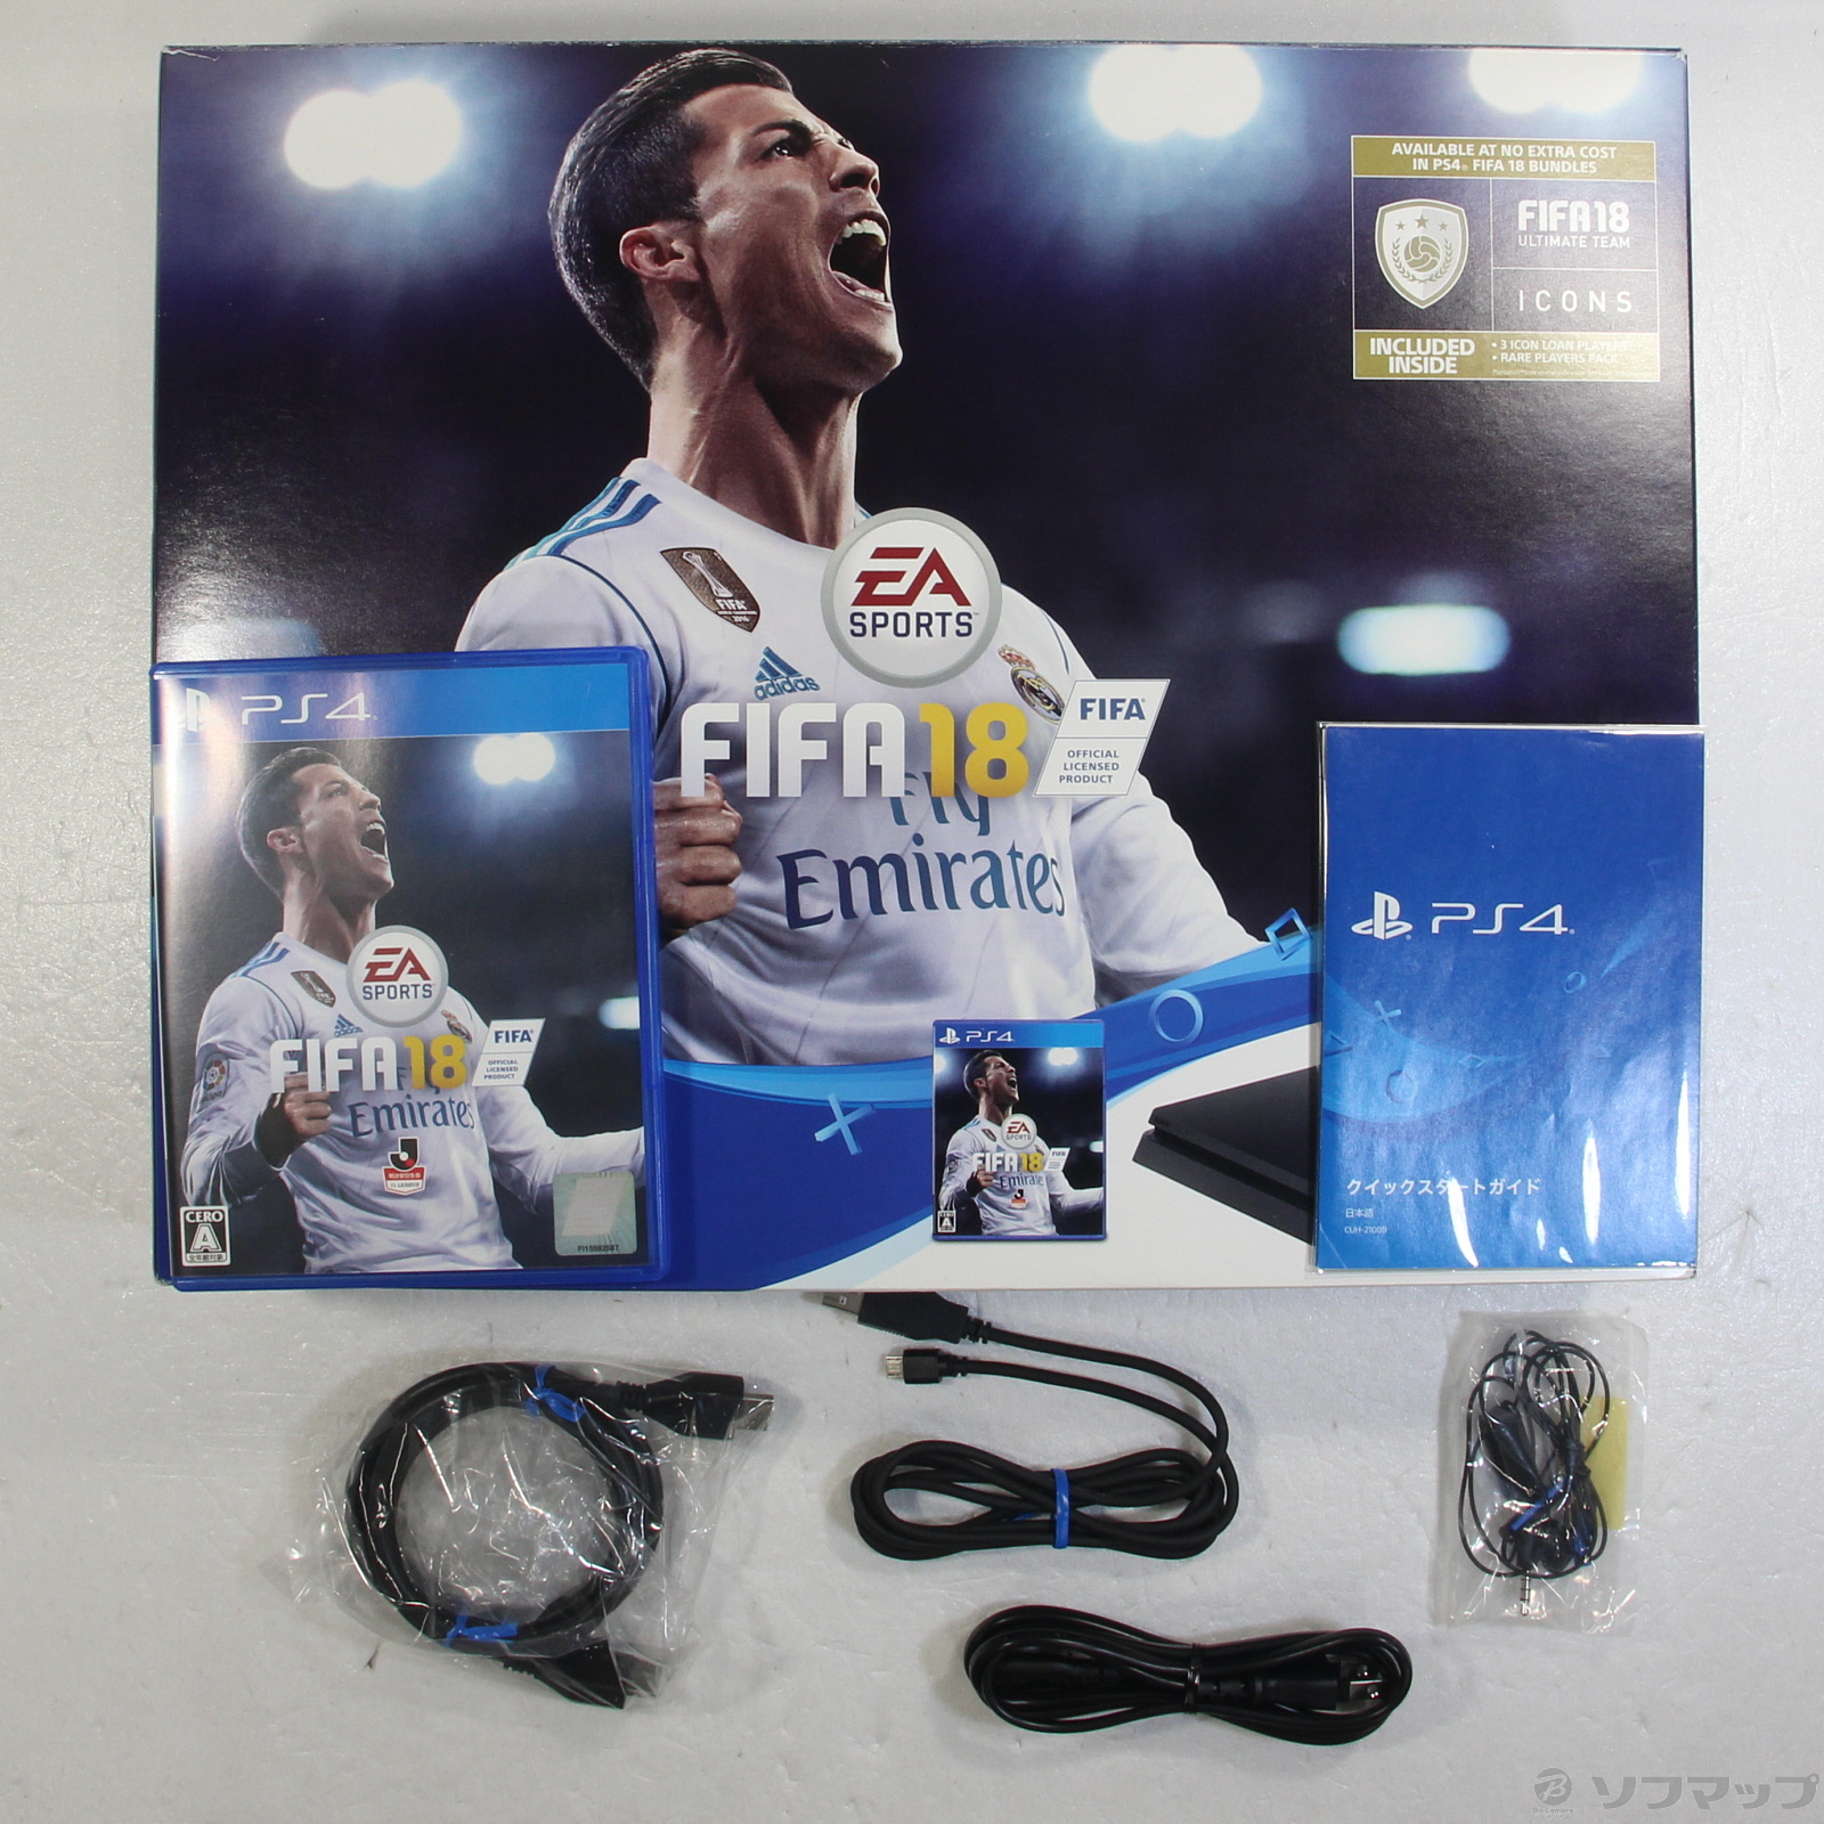 PlayStation 4 FIFA 18 Pack